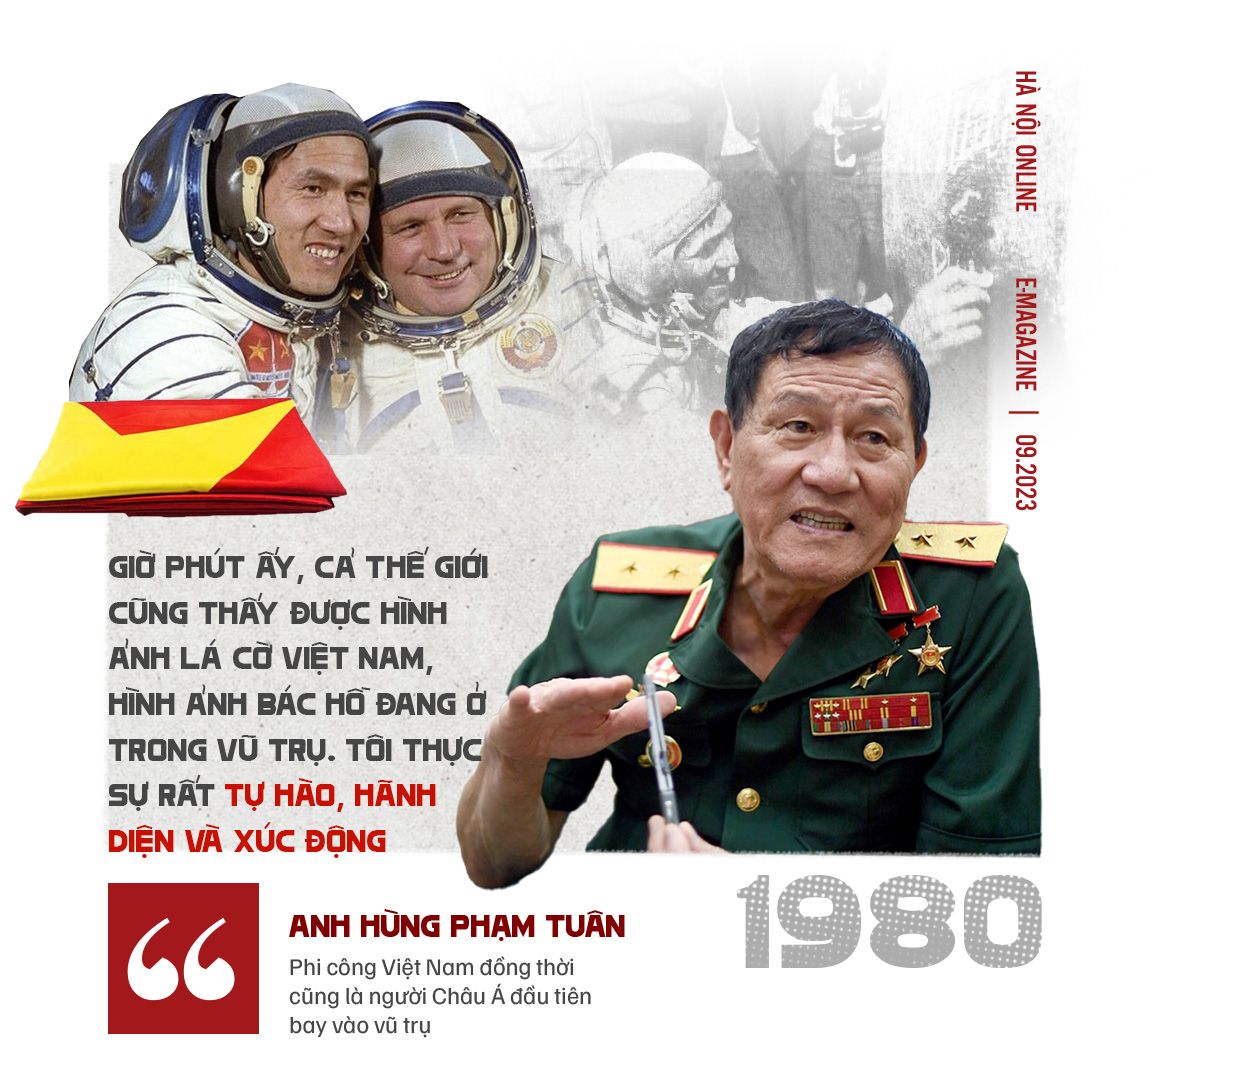 Anh Hùng Phạm Tuân-Phi công Việt Nam đầu tiên bay vào vũ trụ